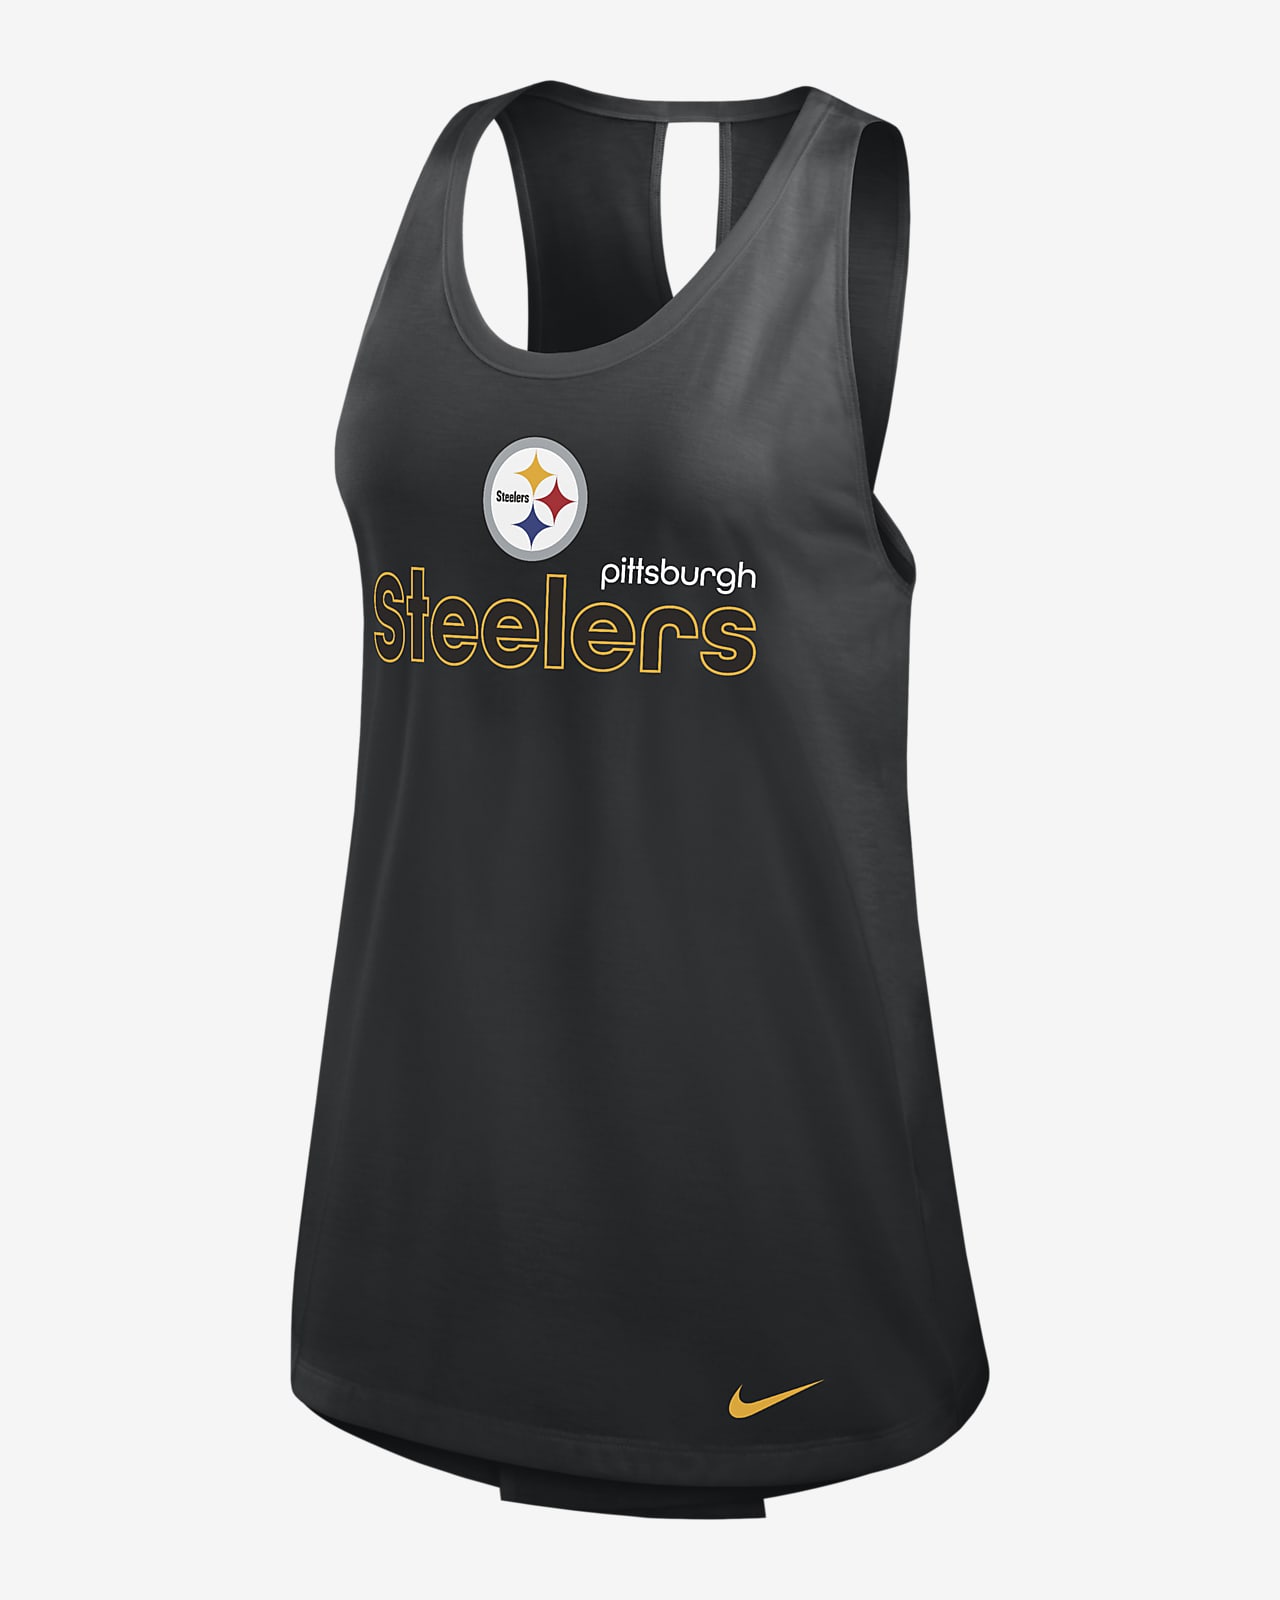 Camiseta de tirantes Nike Dri-FIT de la NFL para mujer Pittsburgh Steelers